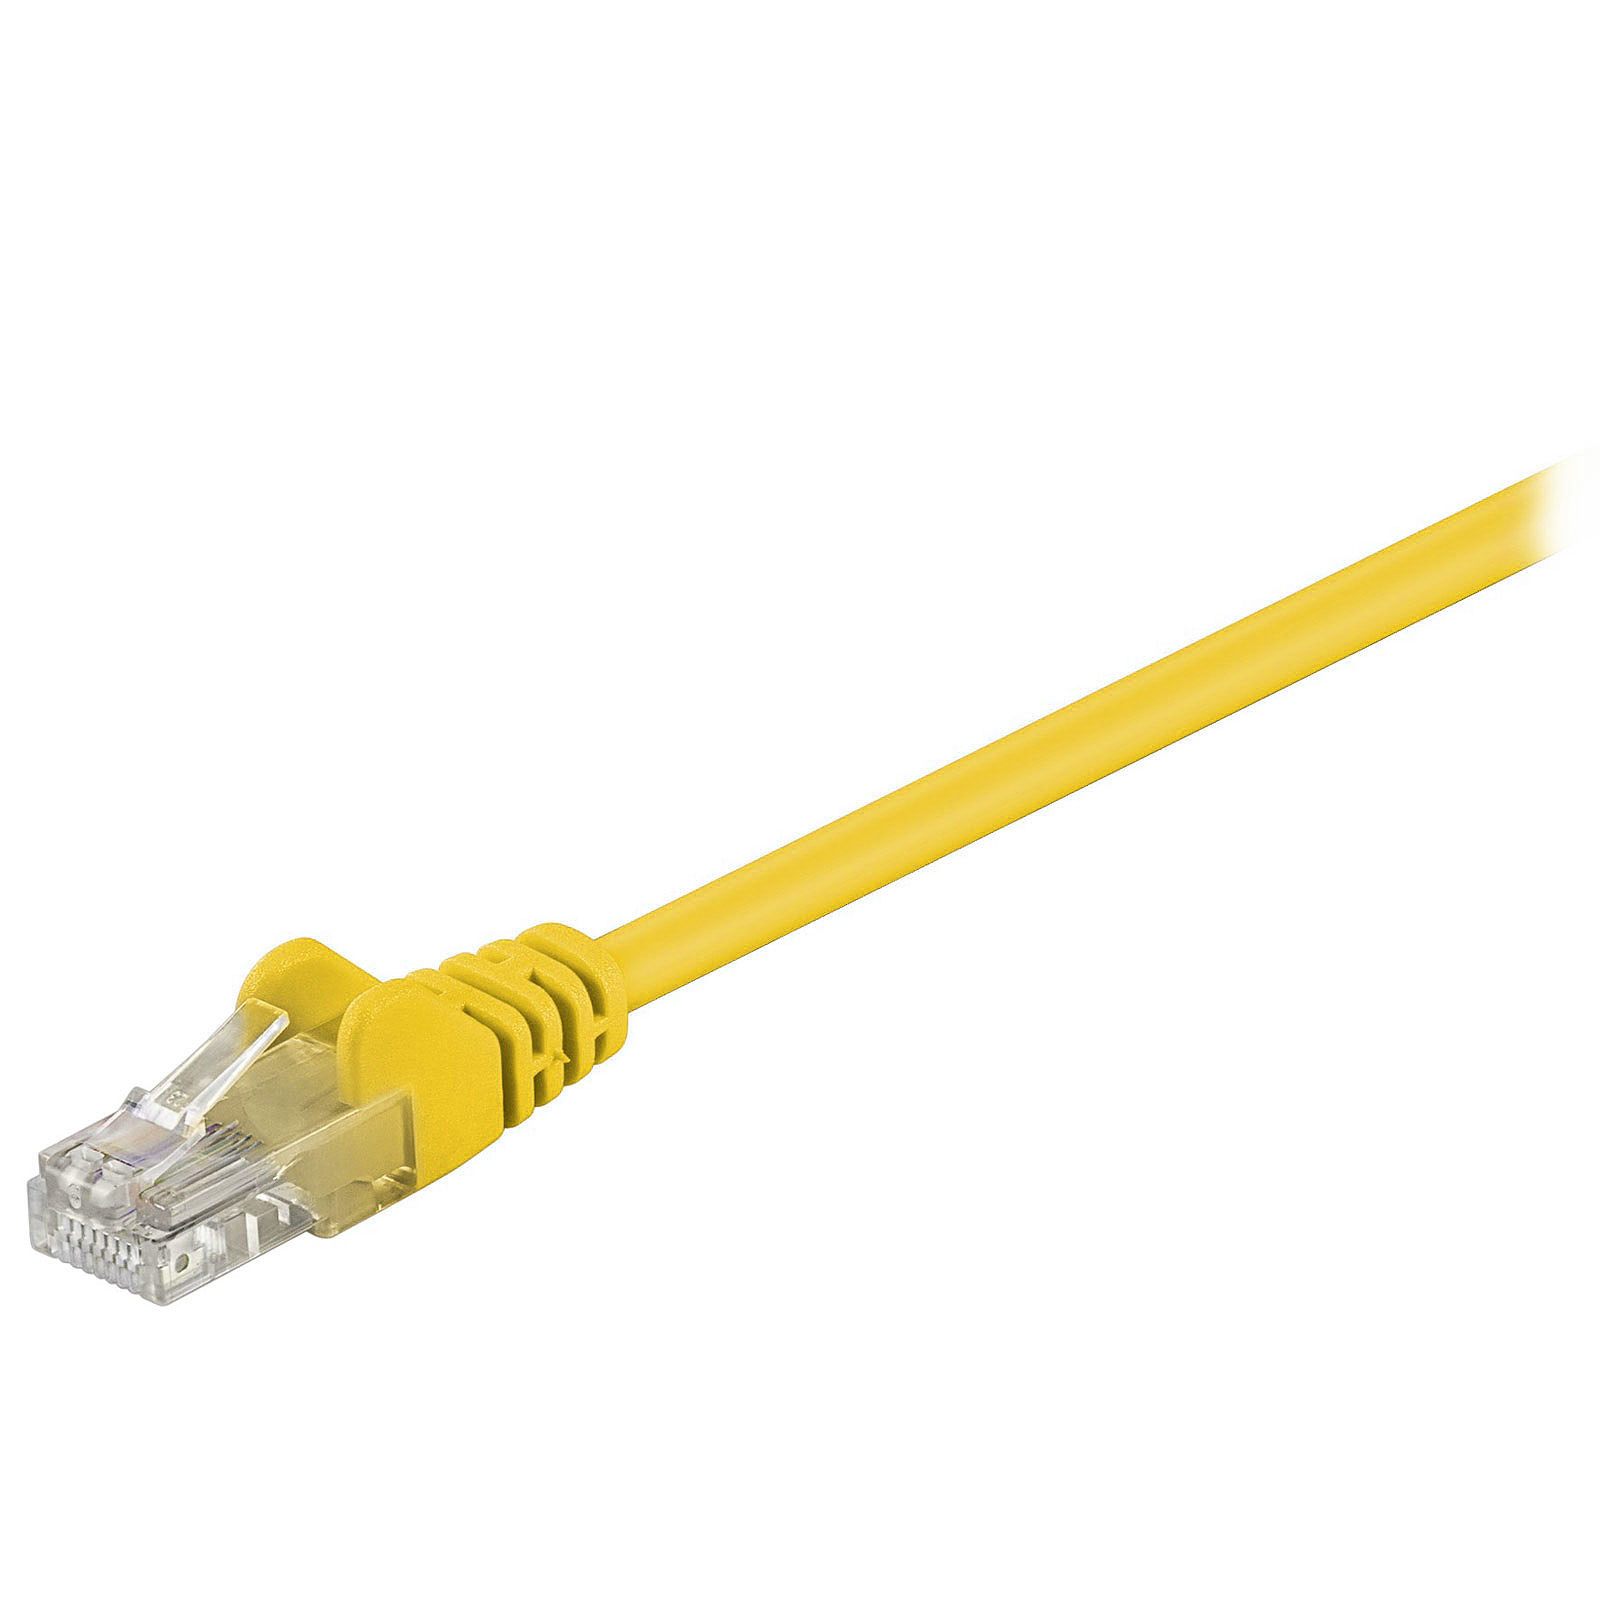 Cable RJ45 categorie 5e U/UTP 0.3 m (Jaune) - Cable RJ45 Generique